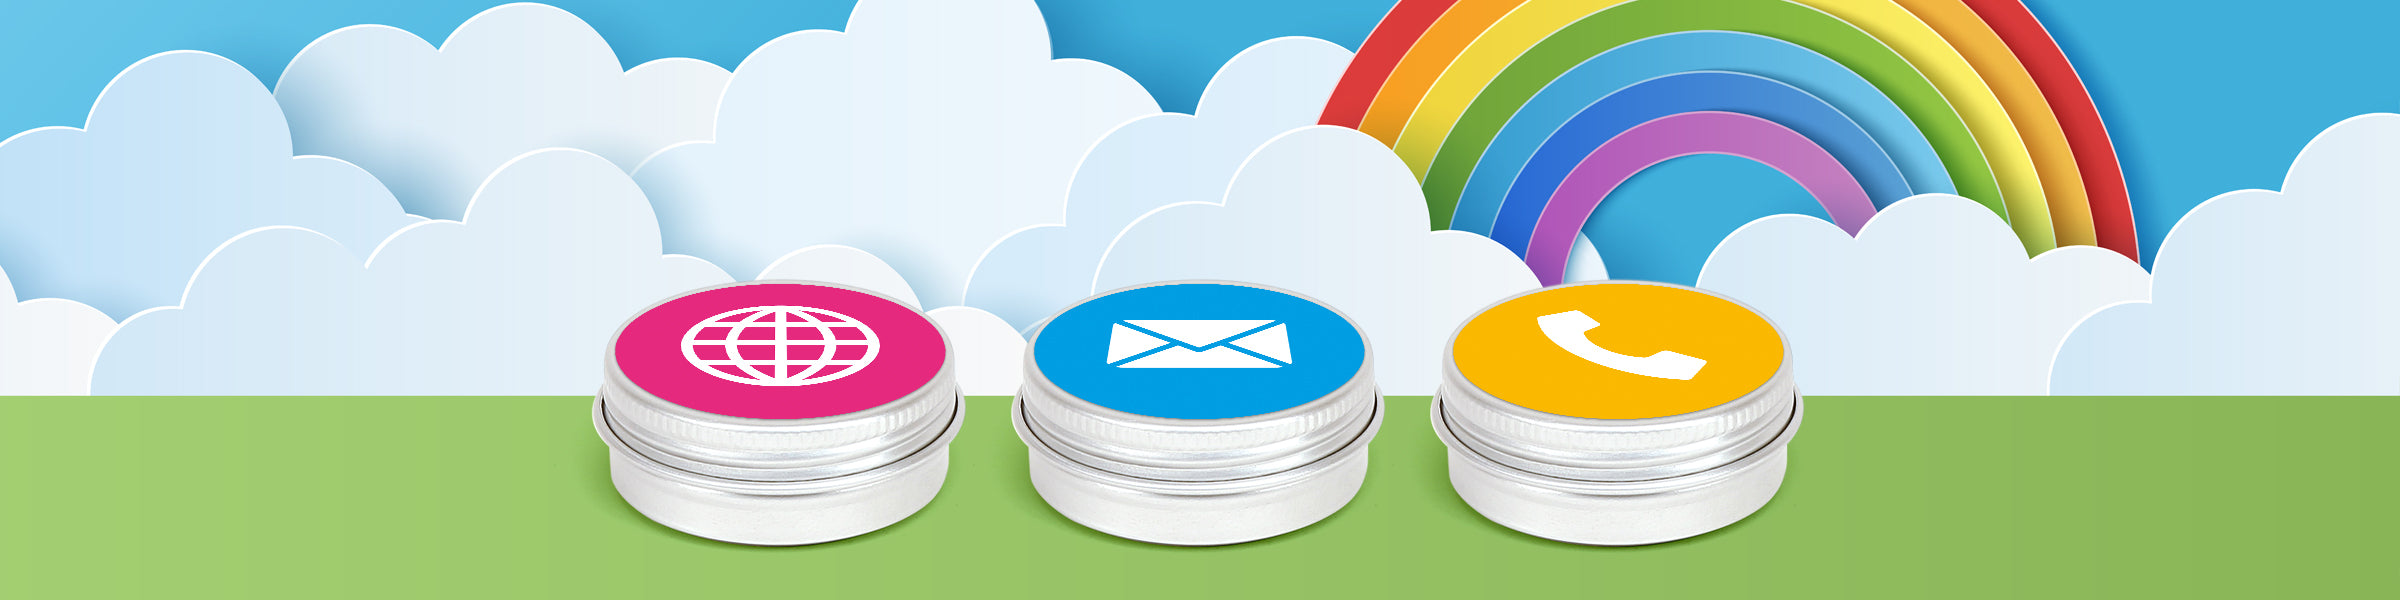 Drei silberne Aluminiumdosen mit Schraubdeckel und Etiketten mit Symbolen für Website, E-Mail und Telefon vor einem Hintergrund aus Wolken und einem Regenbogen.